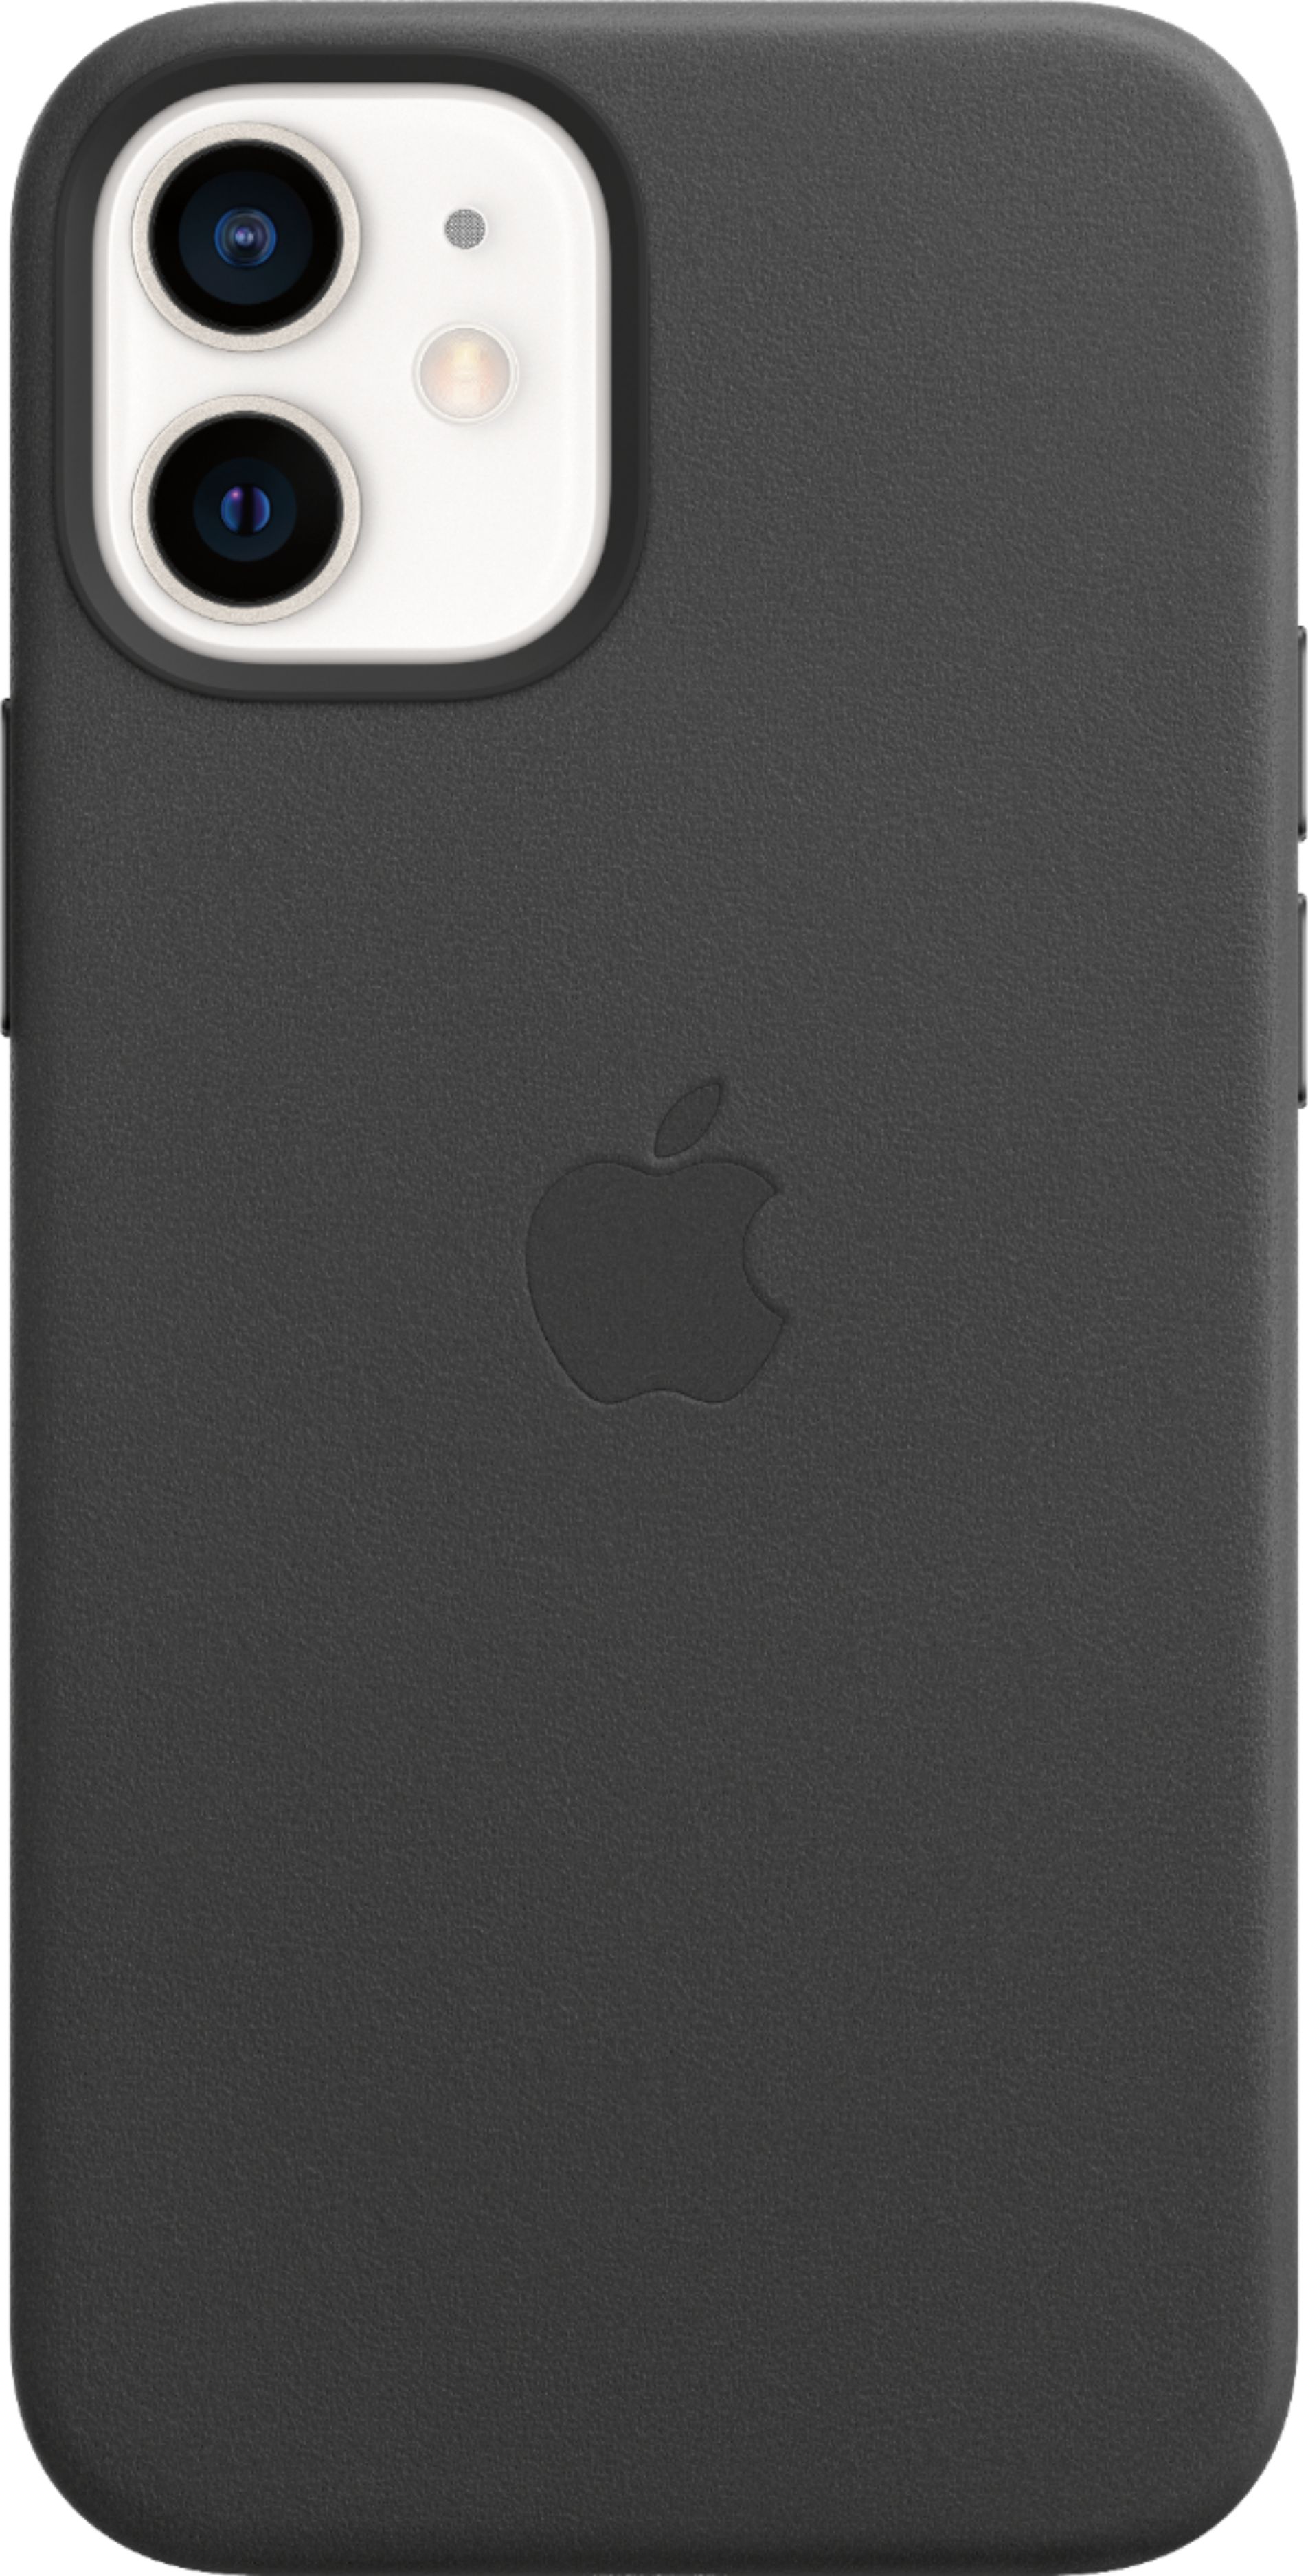 スマホアクセサリー iPhone用ケース Apple iPhone 12 mini Leather Case with MagSafe Black  - Best Buy